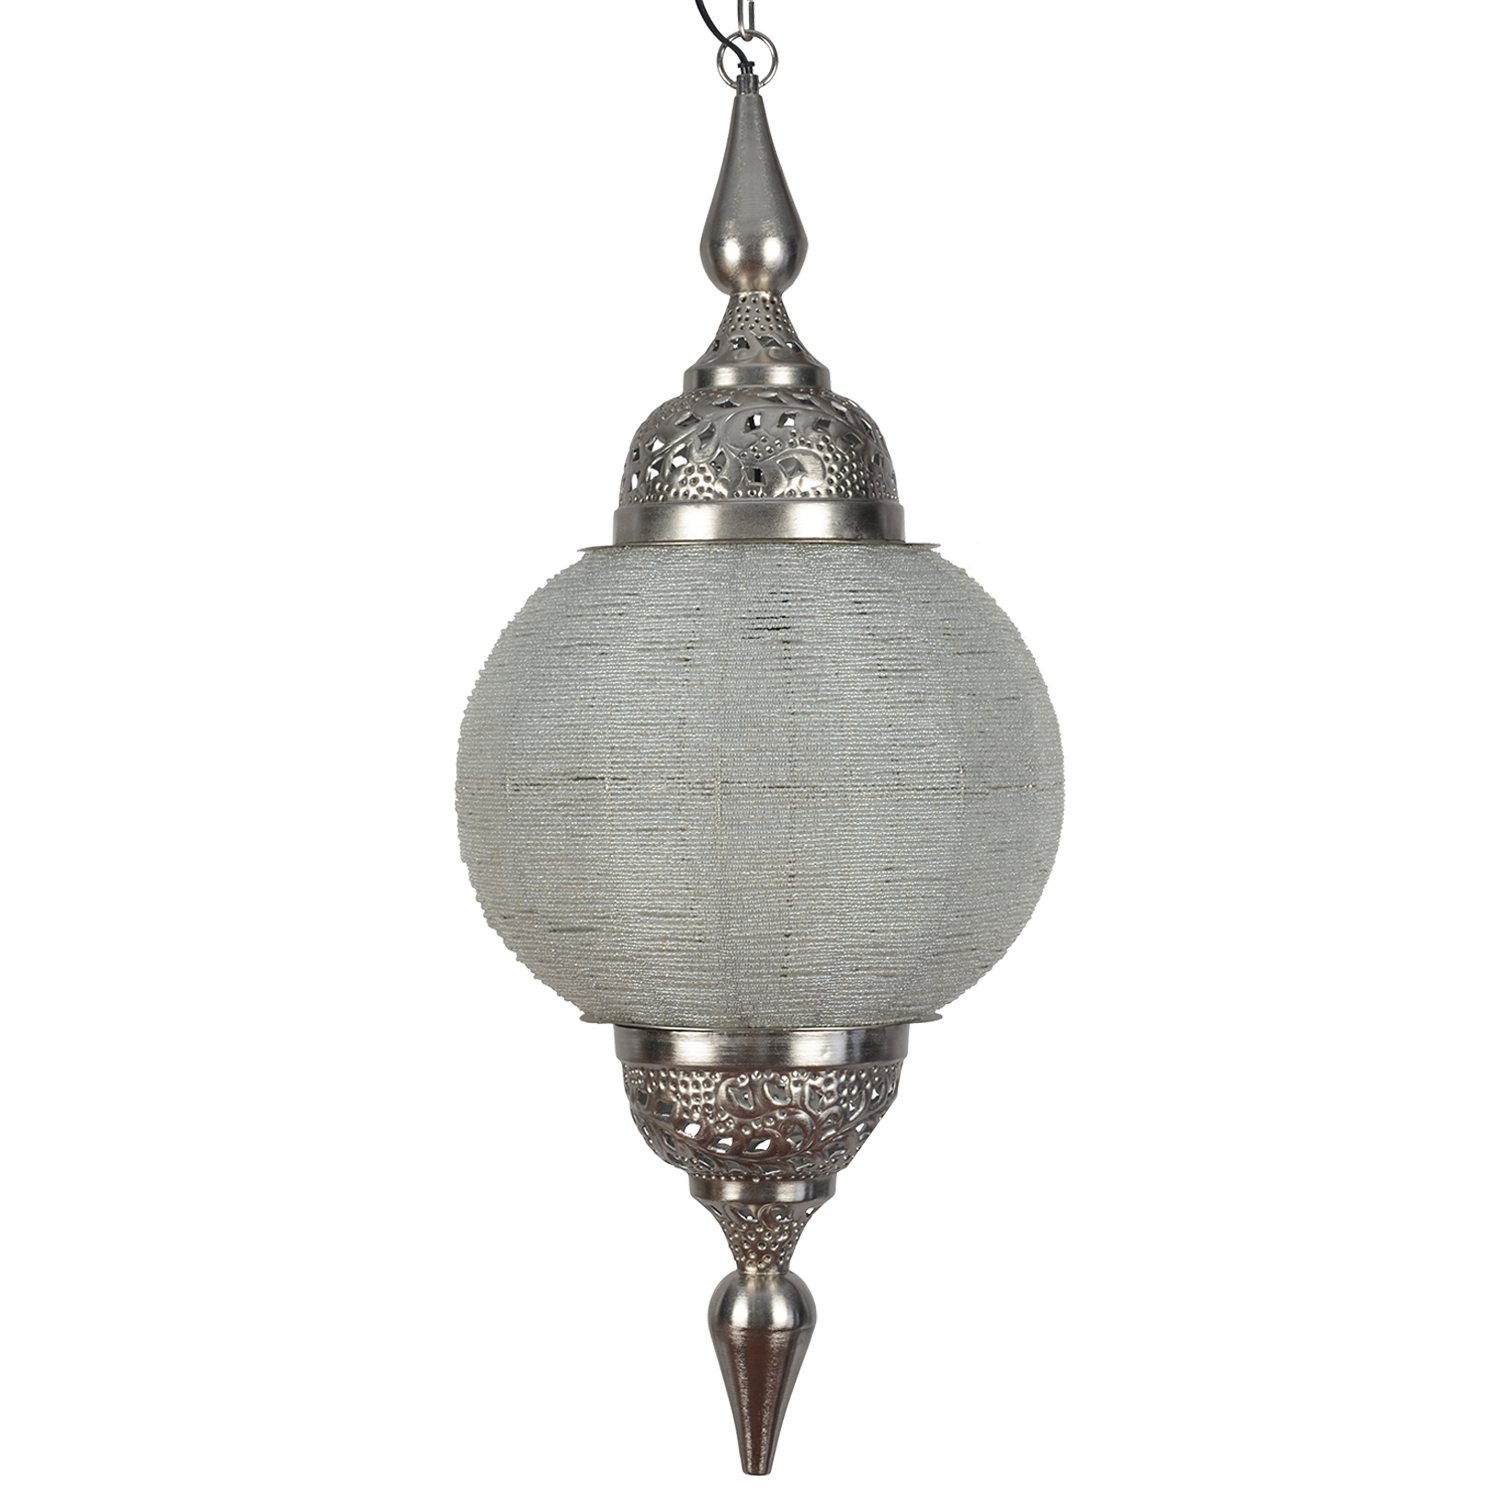 Hanglamp Arabesque bol groot zilver